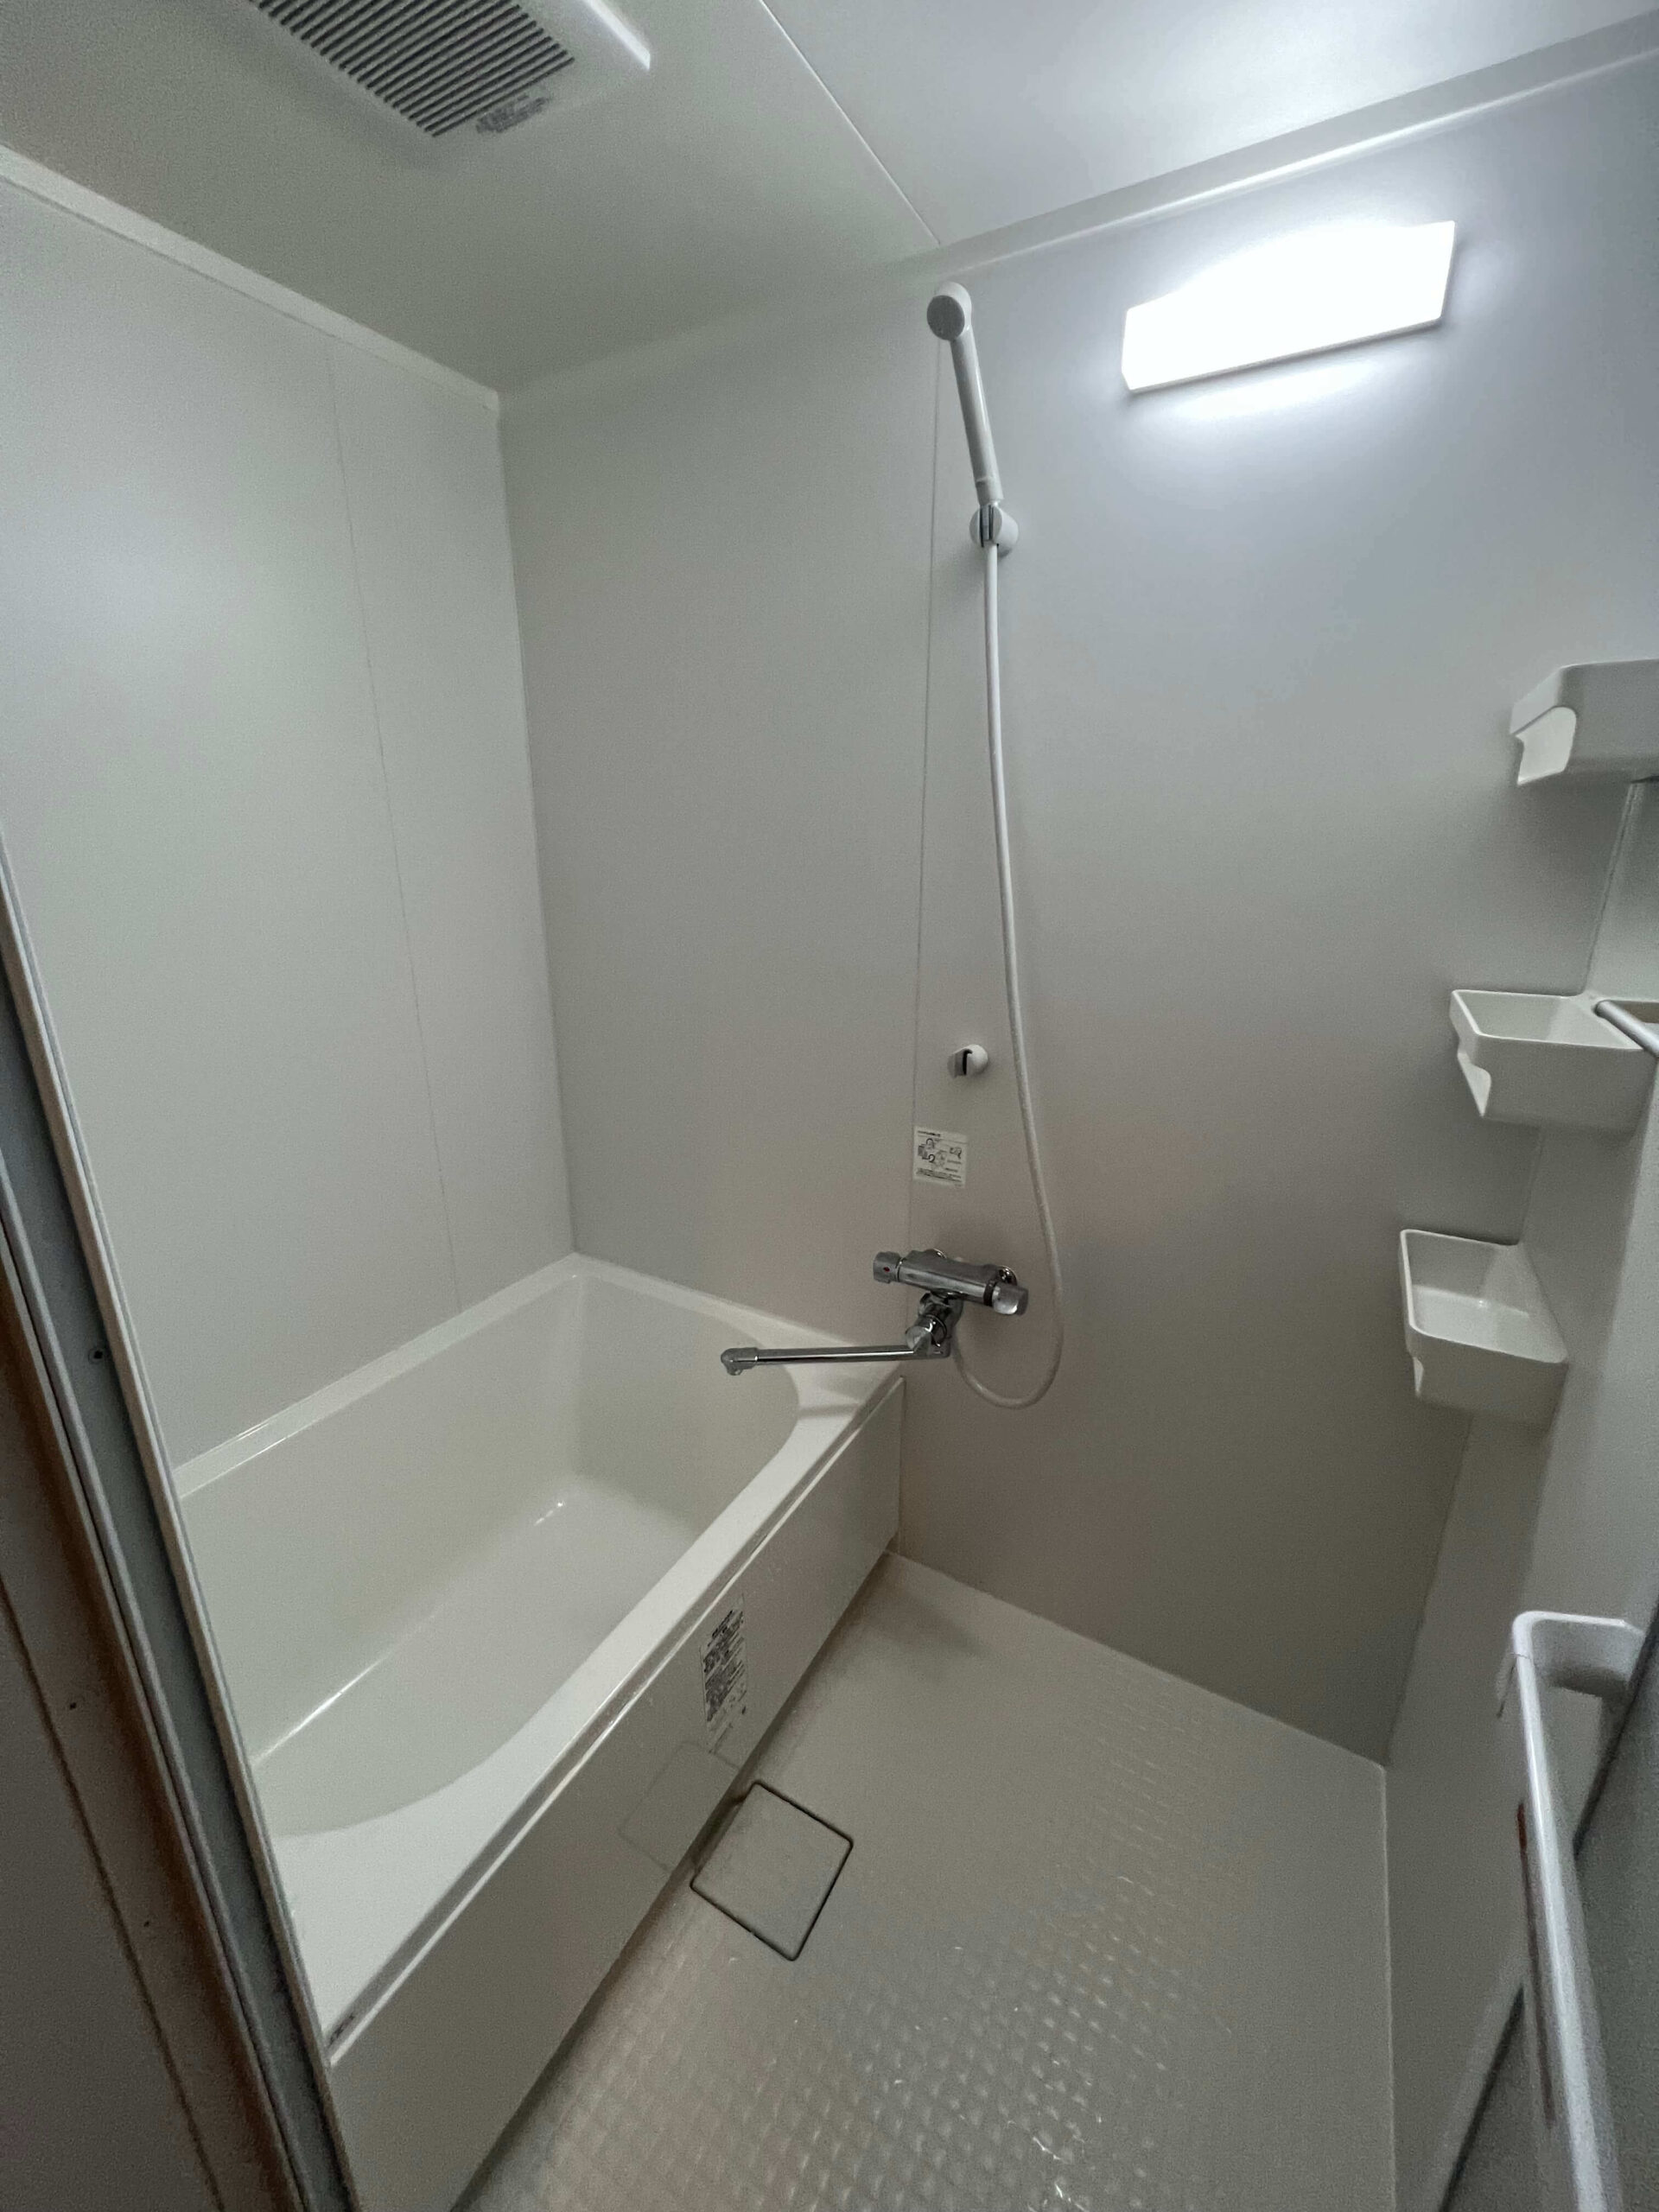 大阪市北区の浴室リフォーム施工事例を公開しました